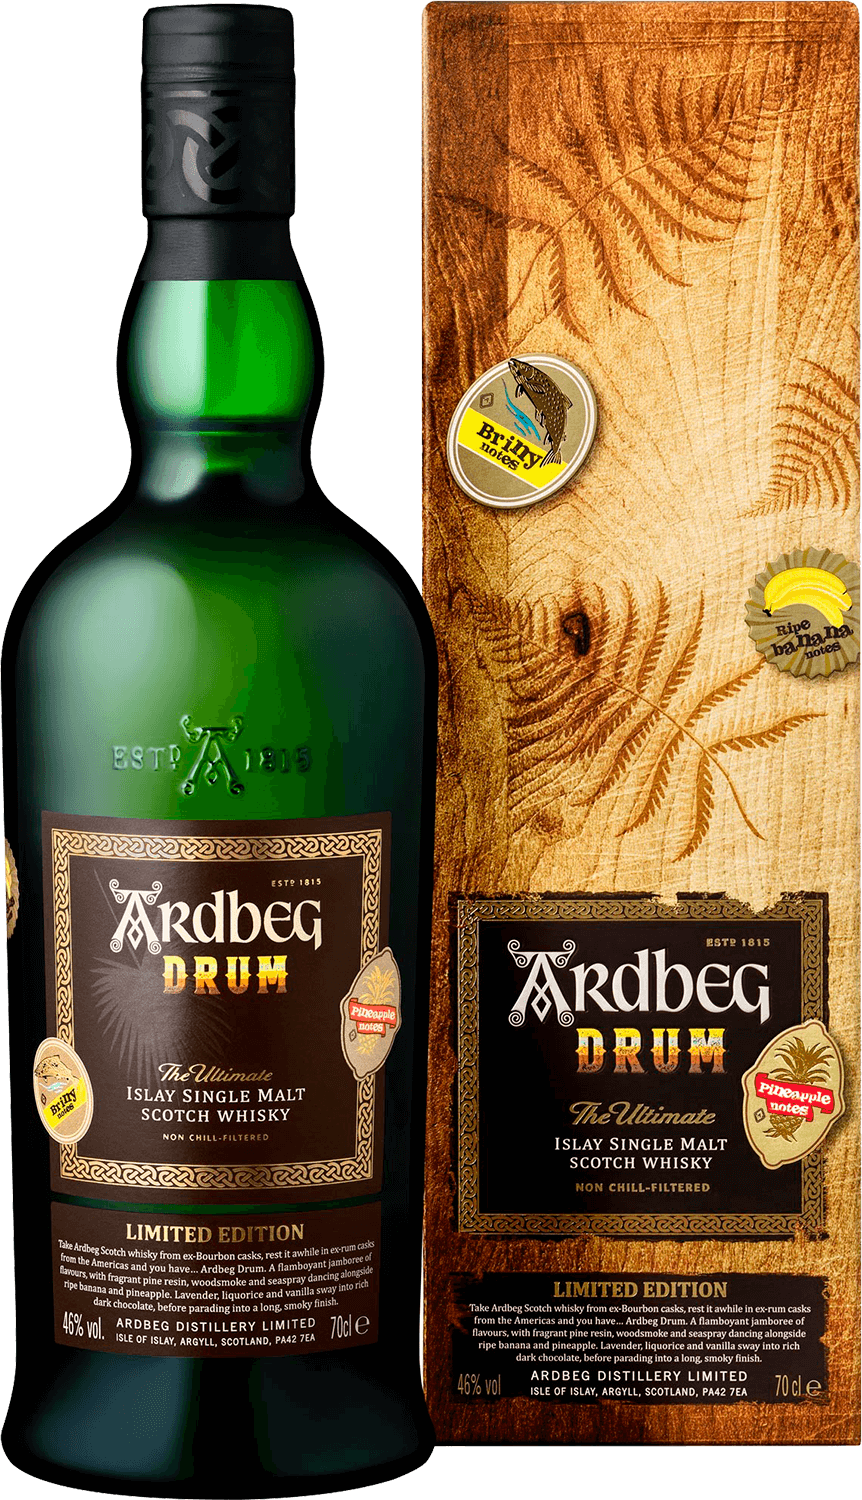 Ardbeg Drum Islay Single Malt Scotch Whisky (gift box) bunnahabhain stiuireadair islay single malt scotch whisky gift box